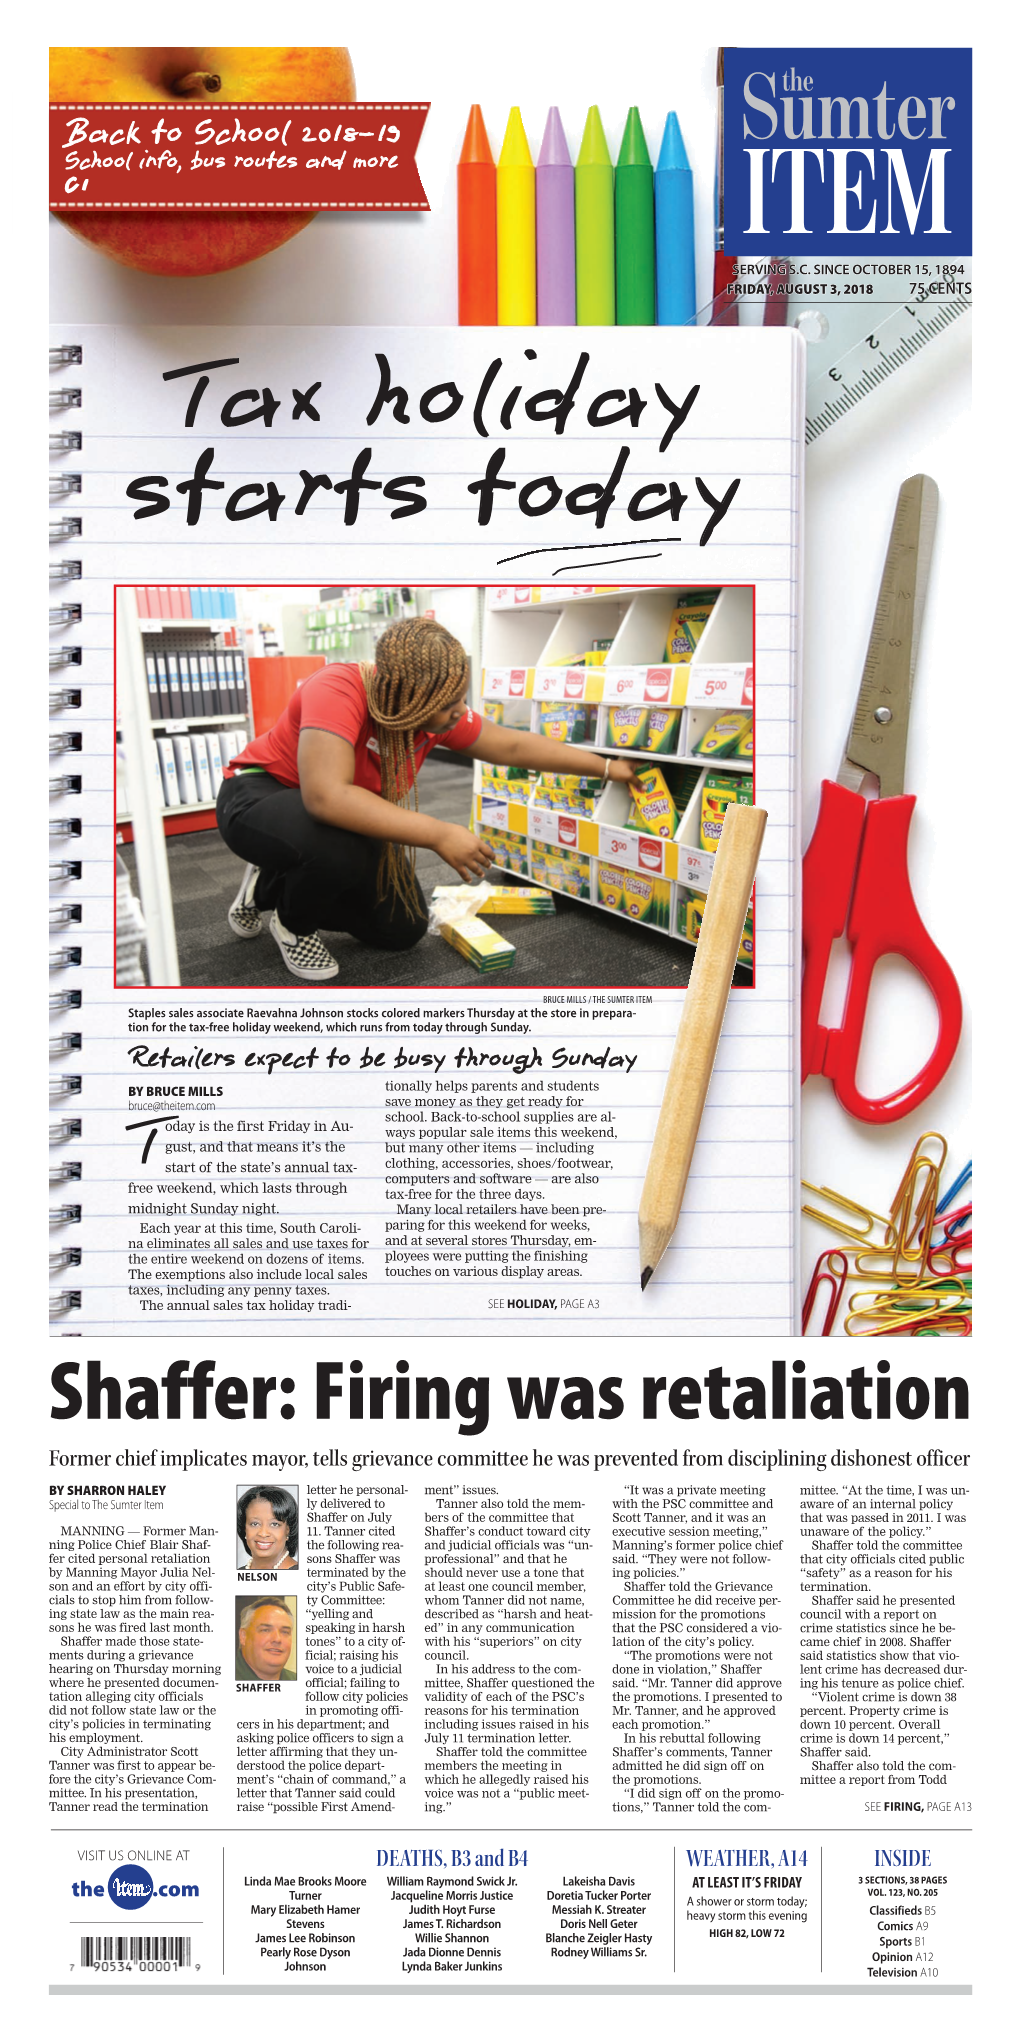 Shaffer: Firing Was Retaliation